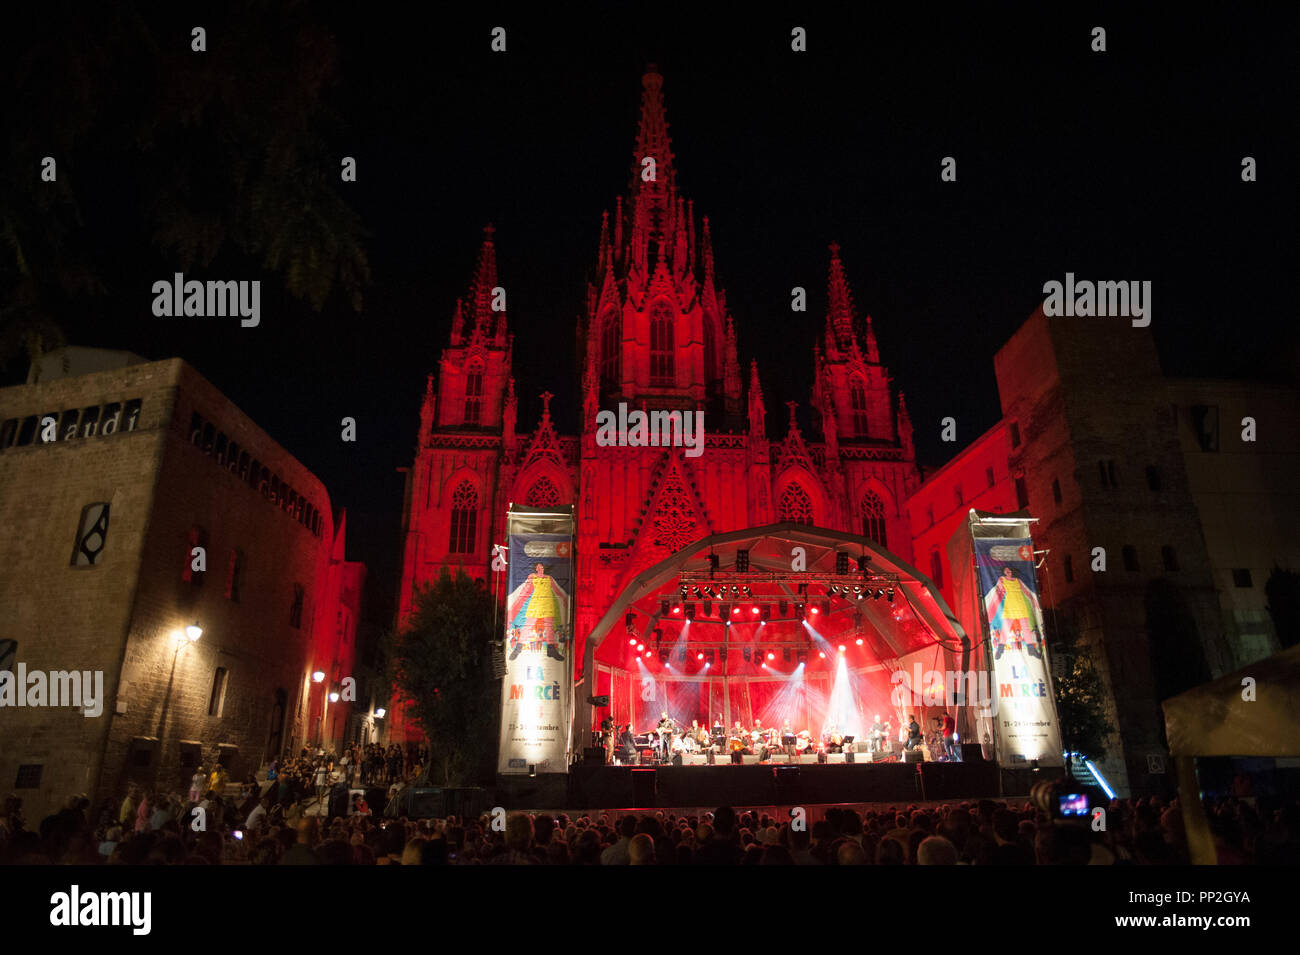 Barcelona, 22 de septiembre de 2018. La catedral de Barcelona está teñido con colores y es parte de un bello escenario para los conciertos que se celebran allí. Foto de stock